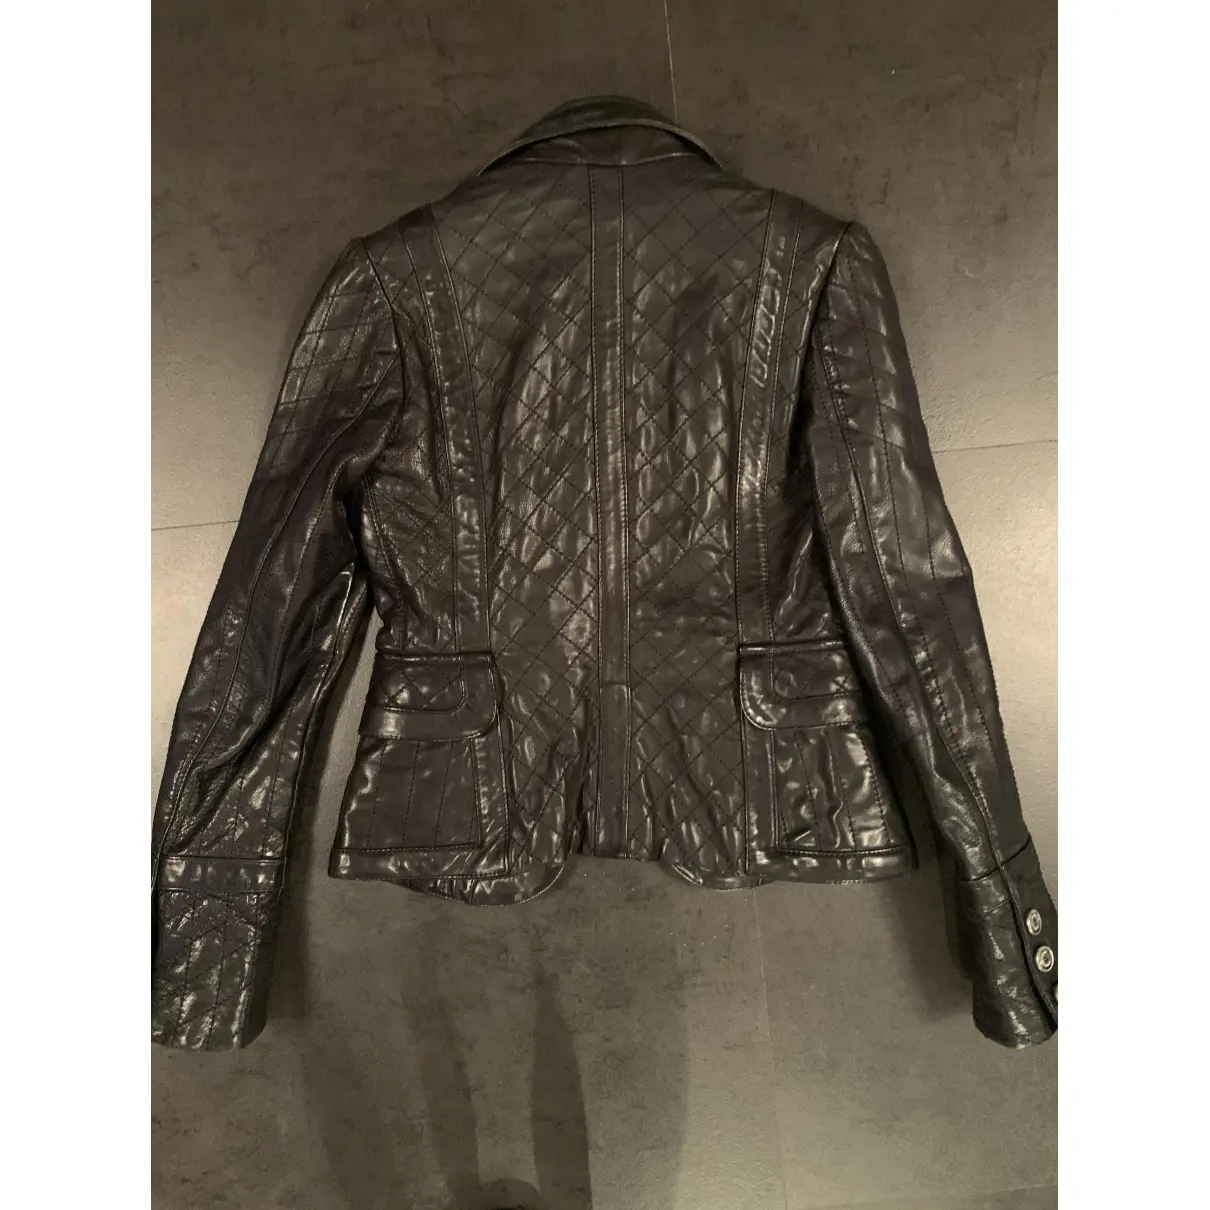 Buy Just Cavalli Leather blazer online